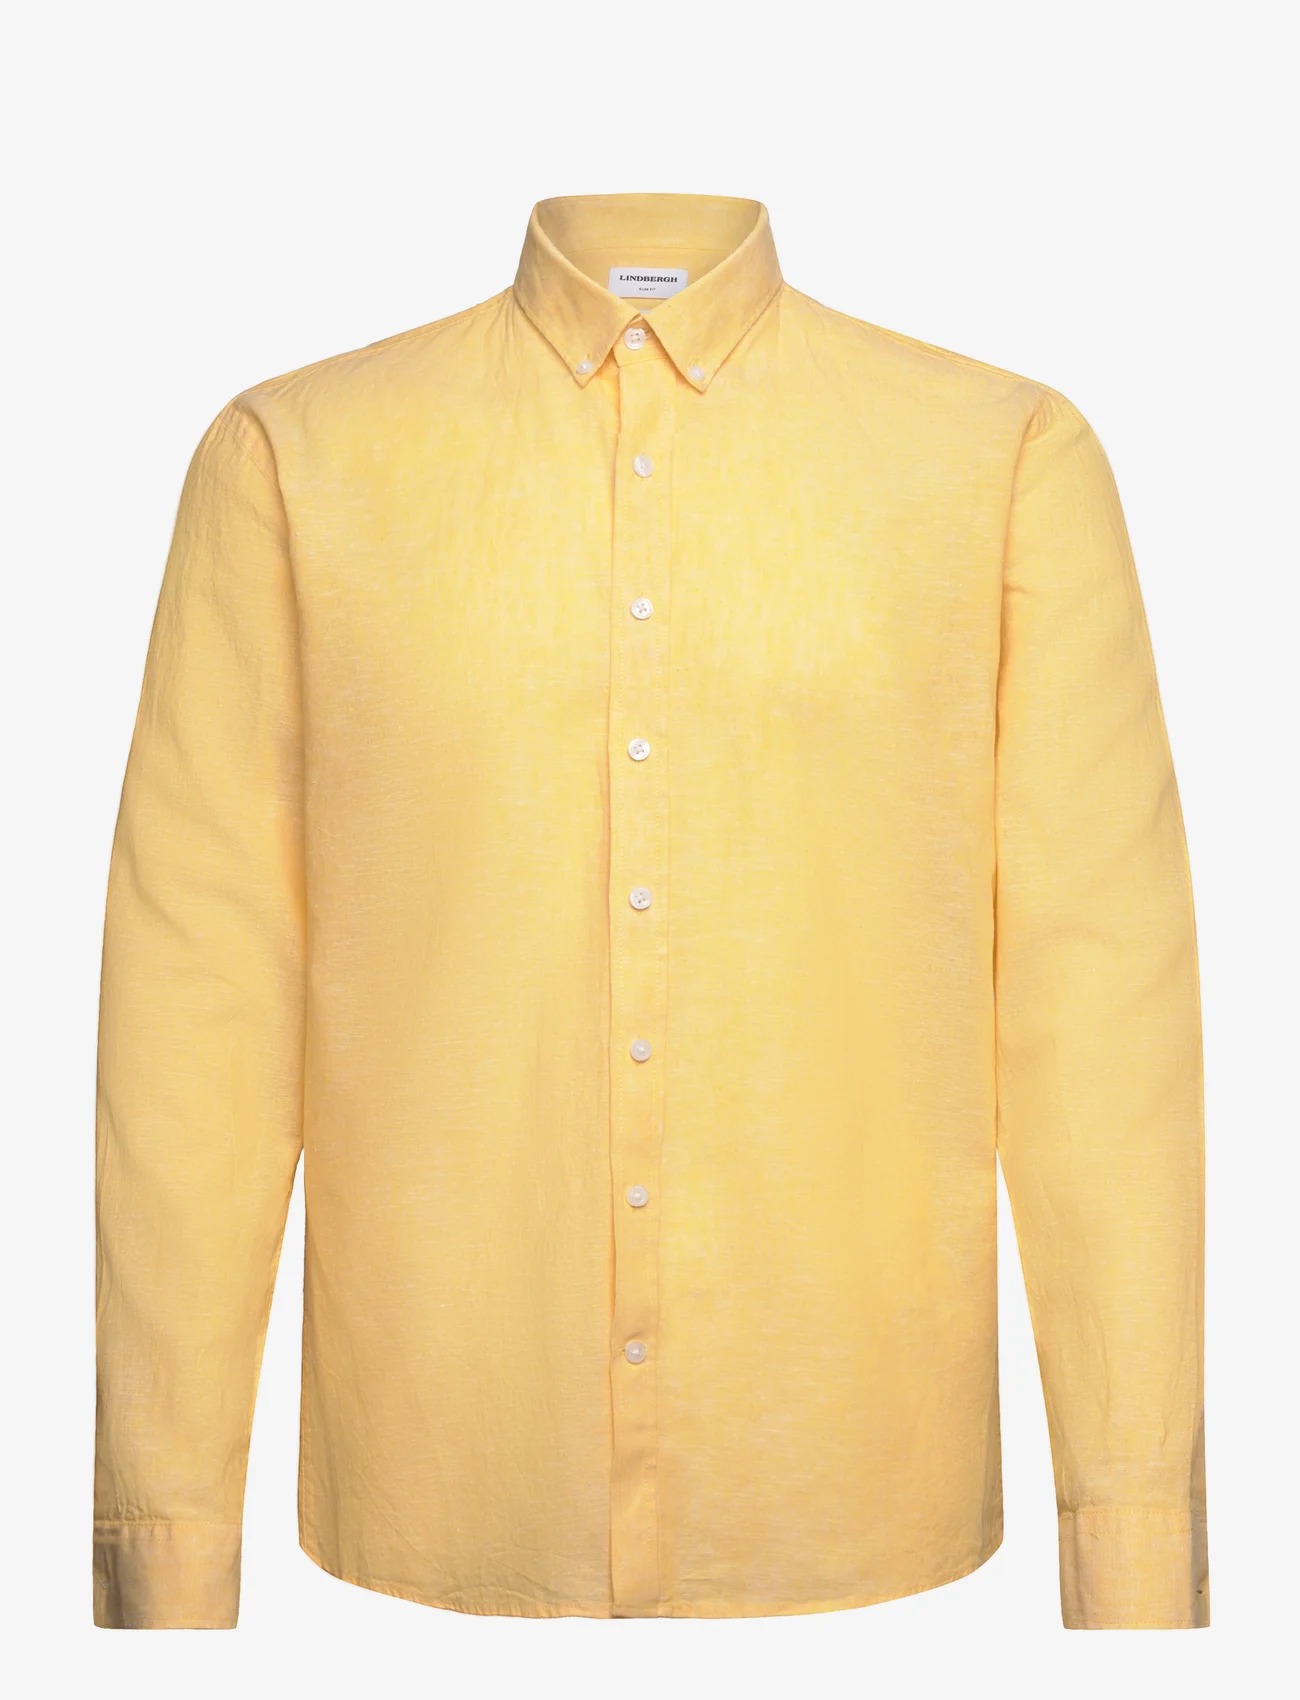 Lindbergh - Linen/cotton shirt L/S - linskjorter - mid yellow - 0